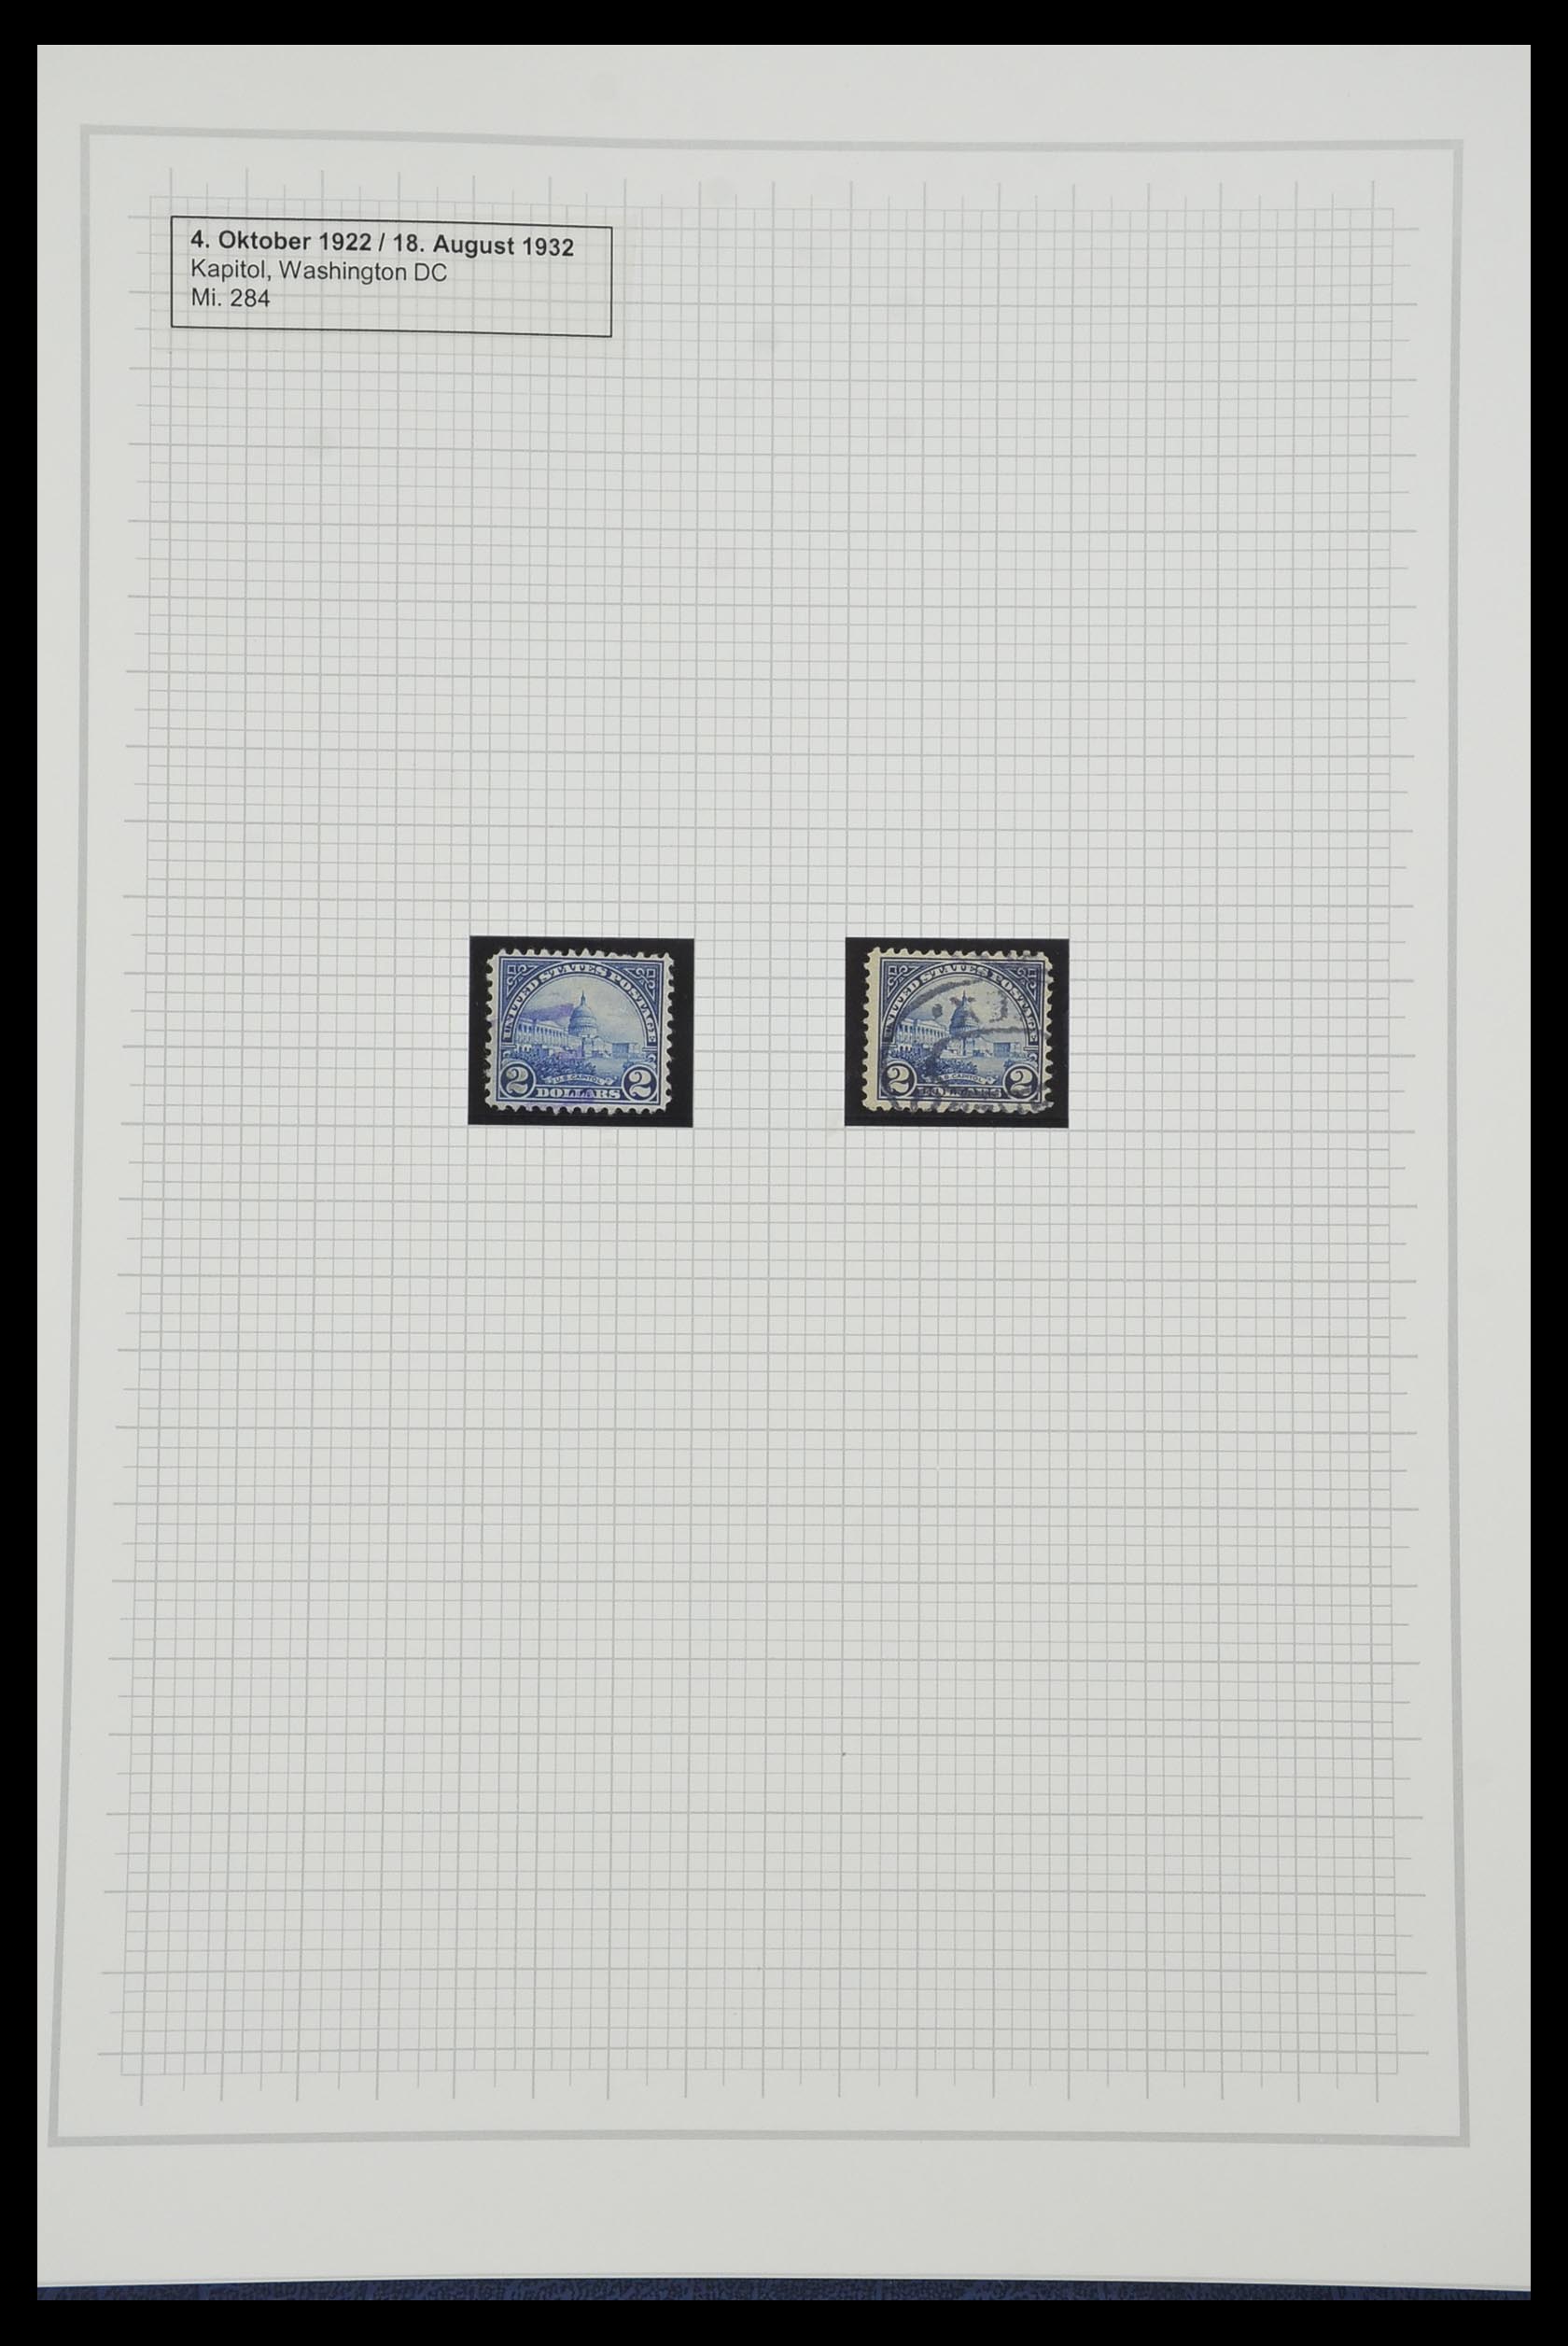 34309 538 - Stamp collection 34309 USA 1922-1934.